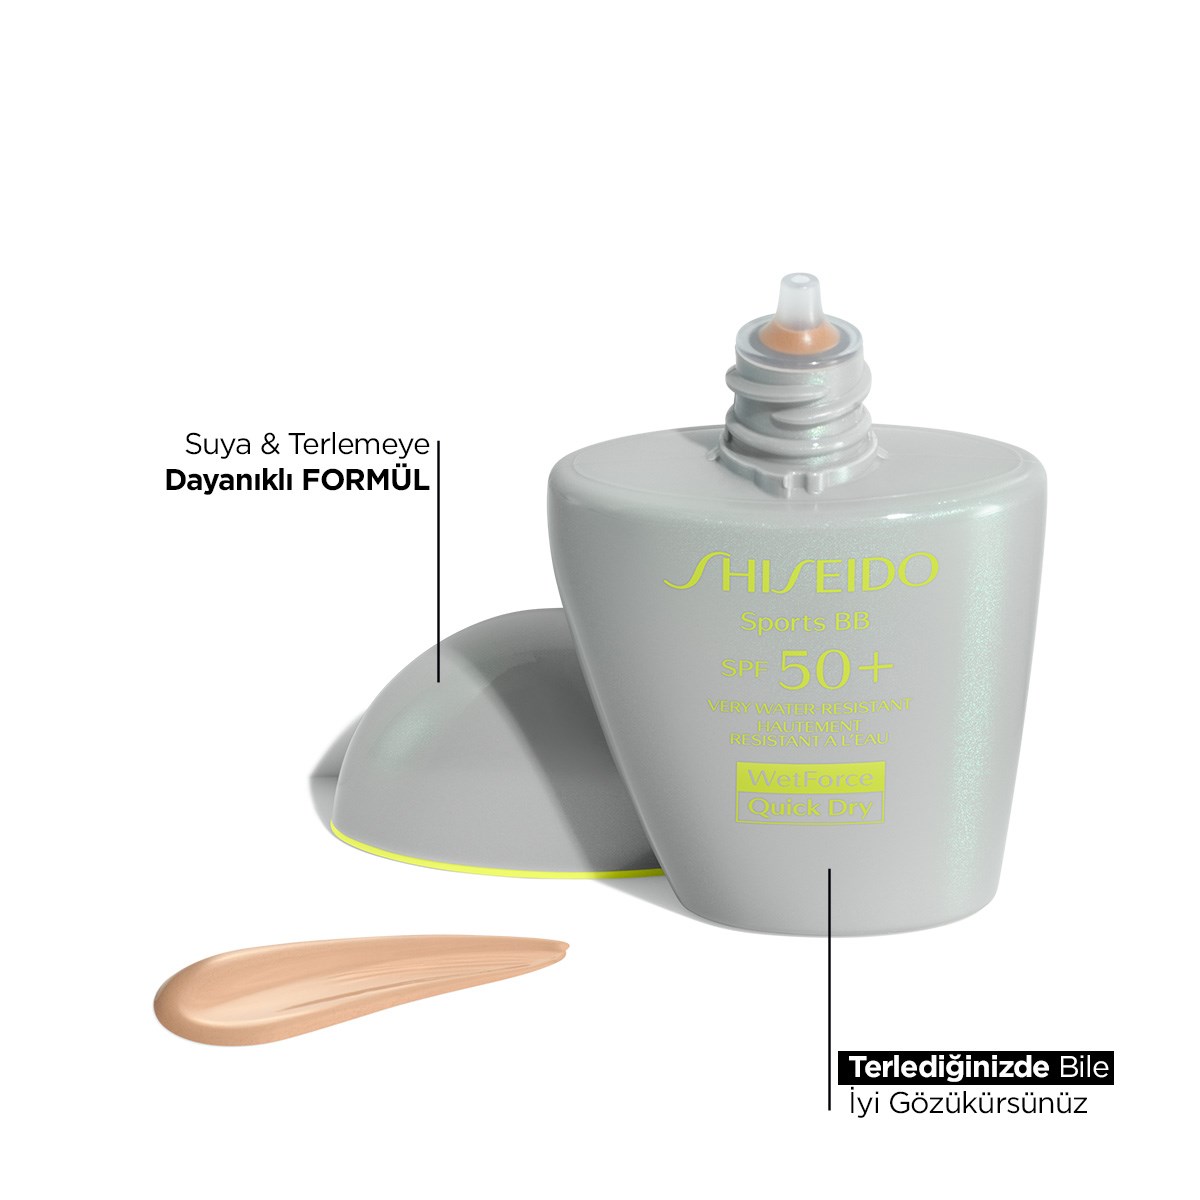 Shiseido Antioxidant Defense & Silky Smooth Spf50+ Protection Bundle - Özel  Fiyatlı Set Fırsatları | Makyaj Trendi